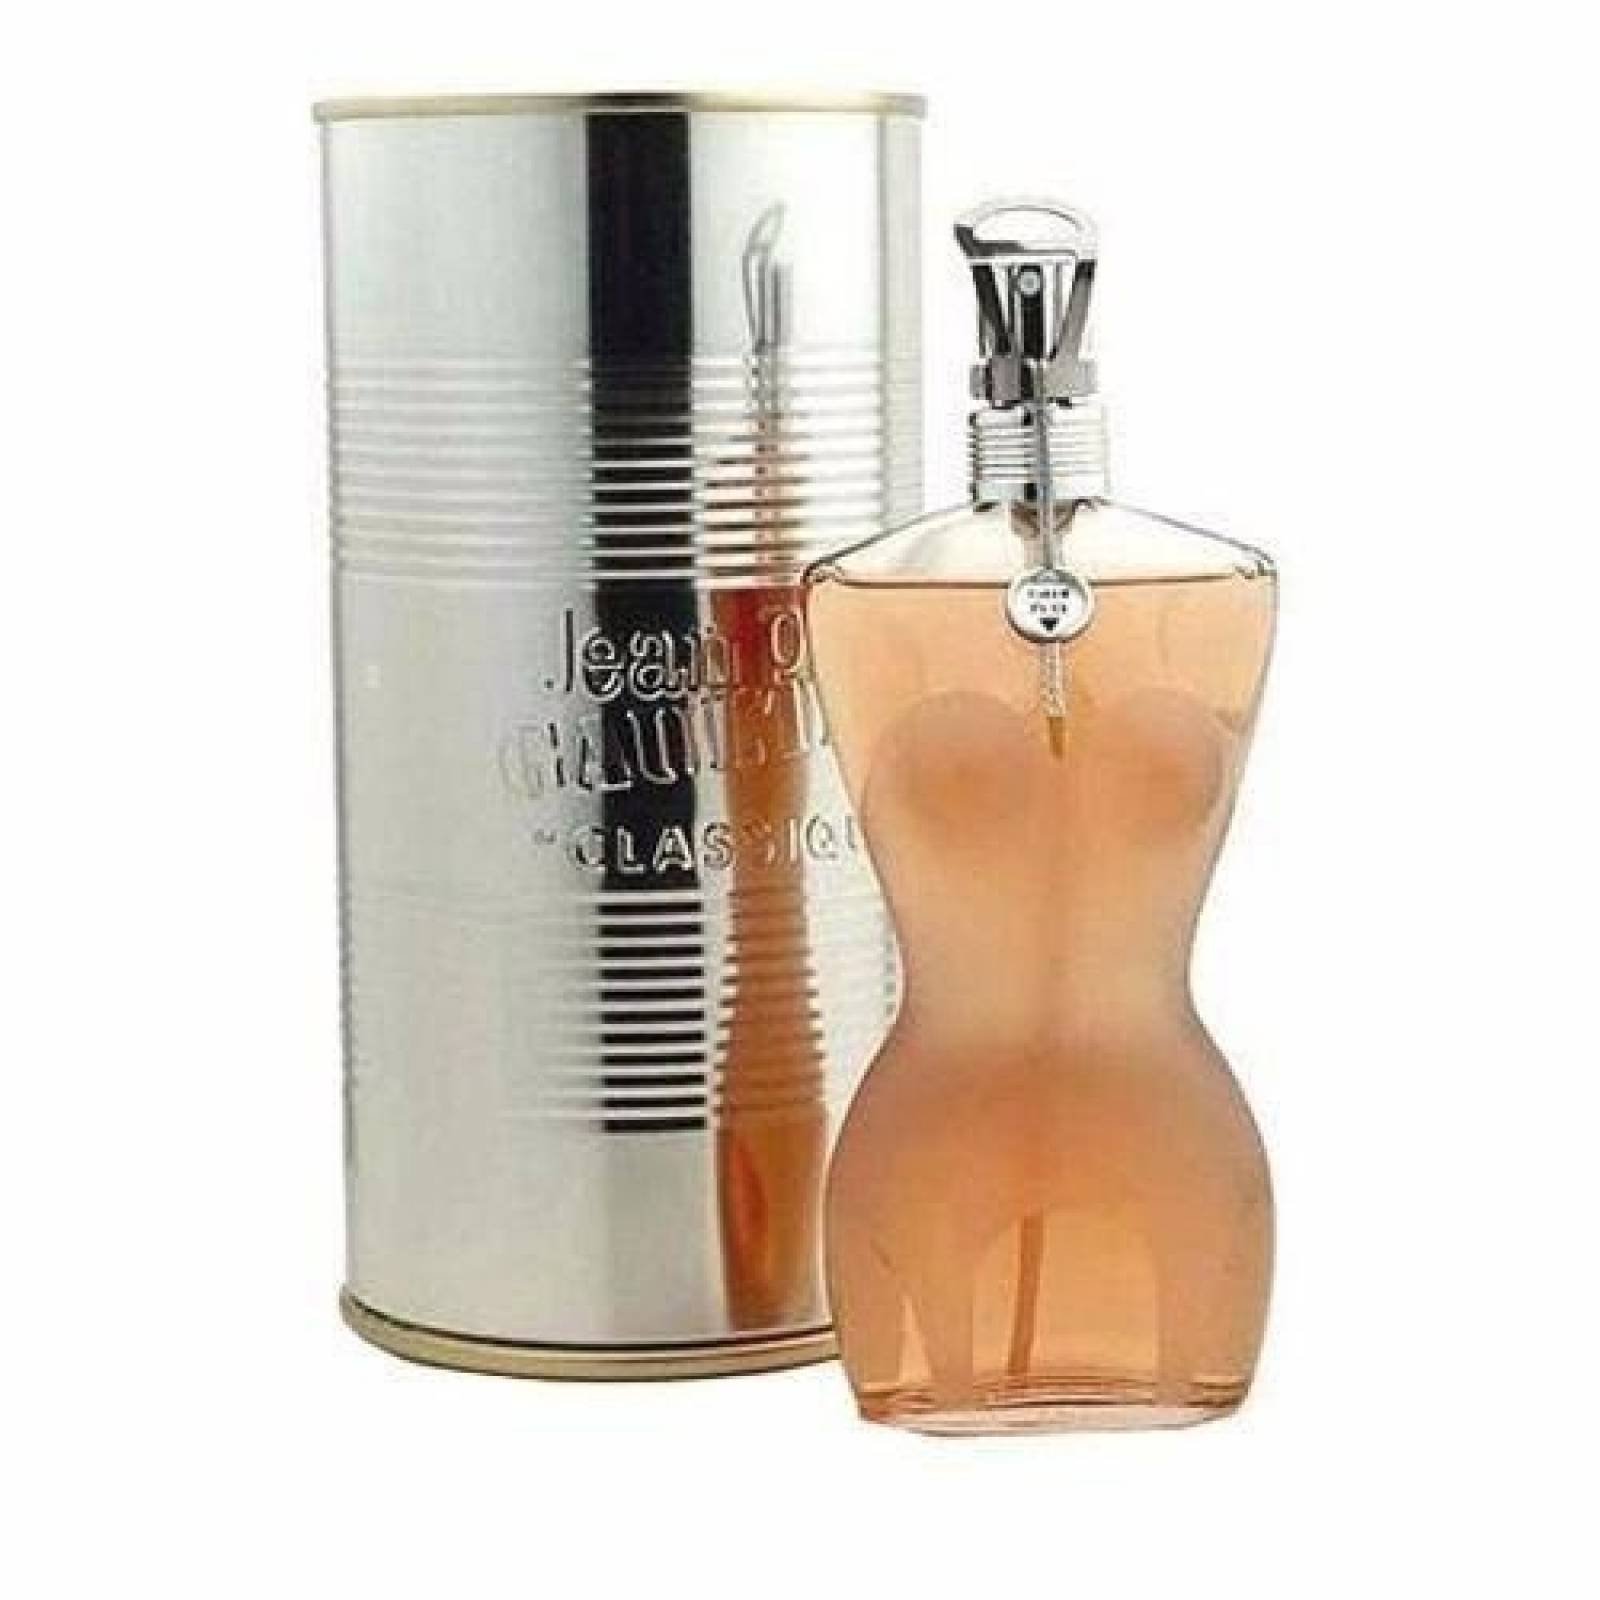 Jean Paul Gaultier Classique Dama 100ml Perfume Original